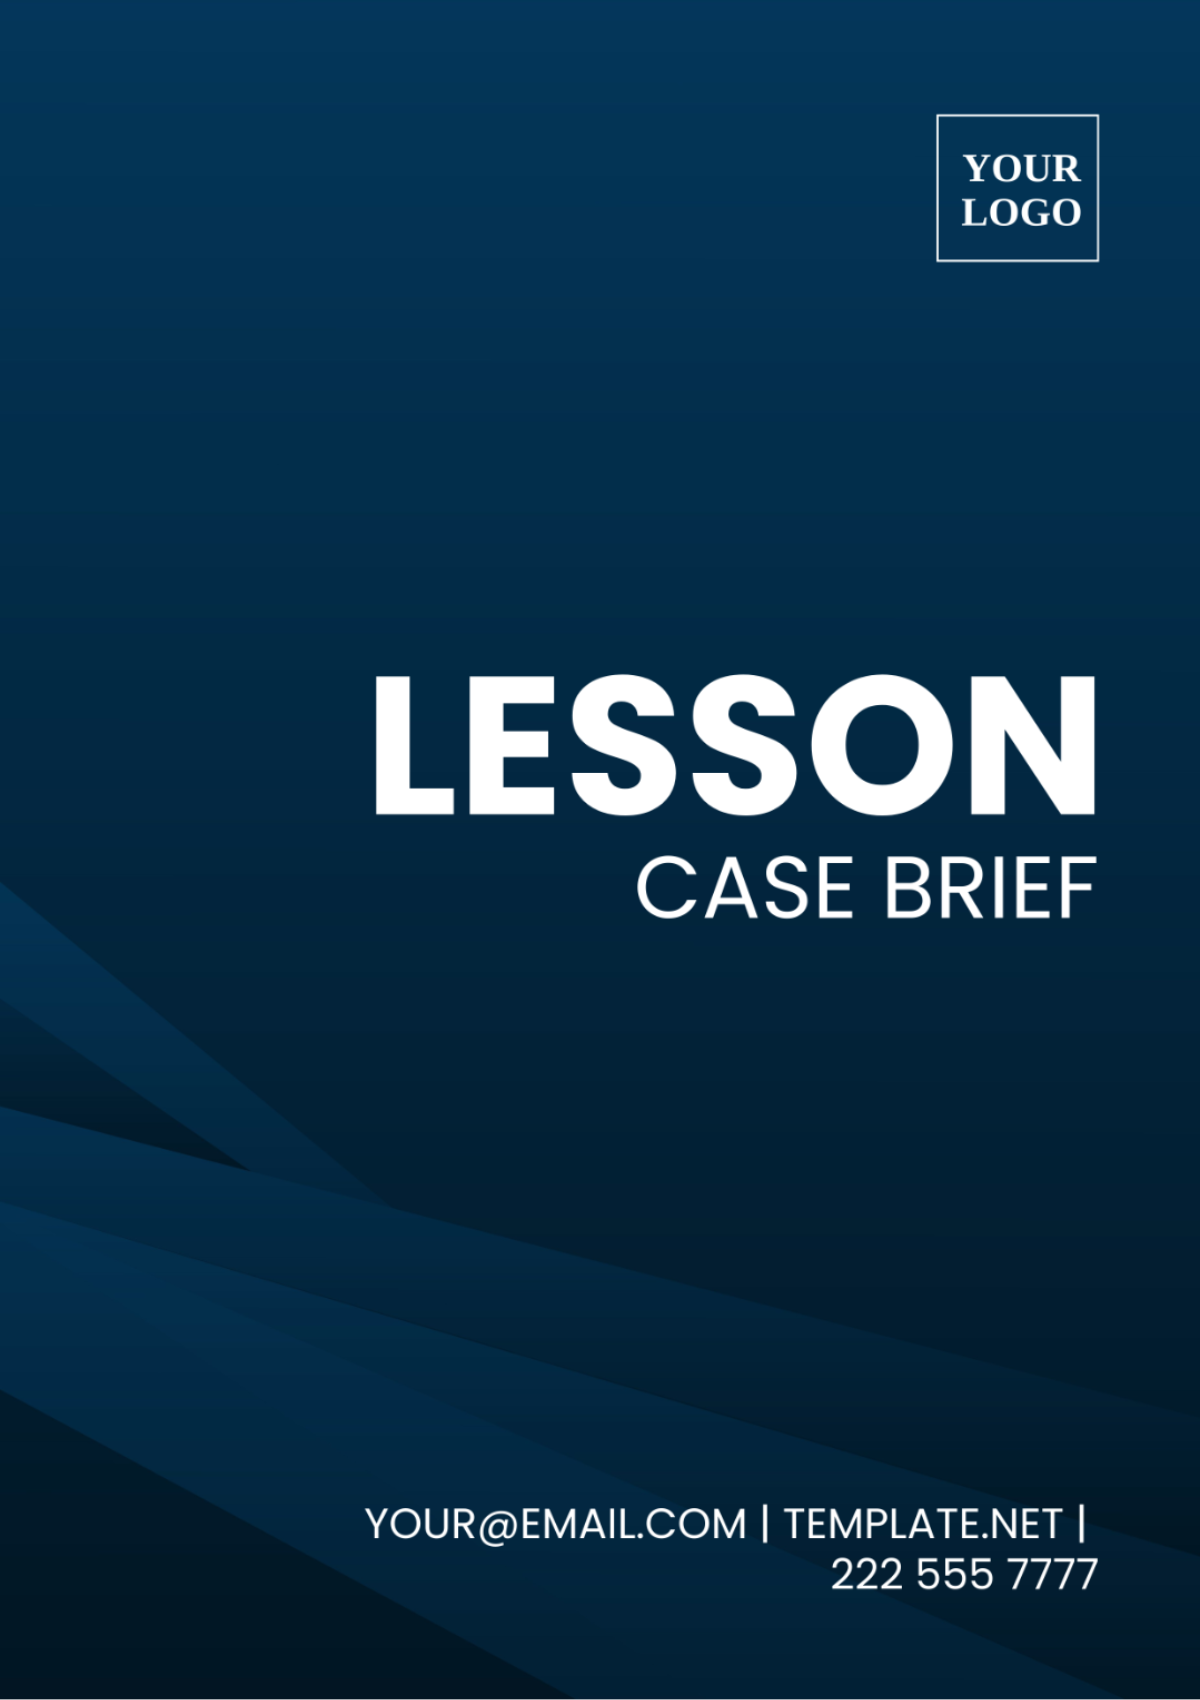 Free Lesson Case Brief Template